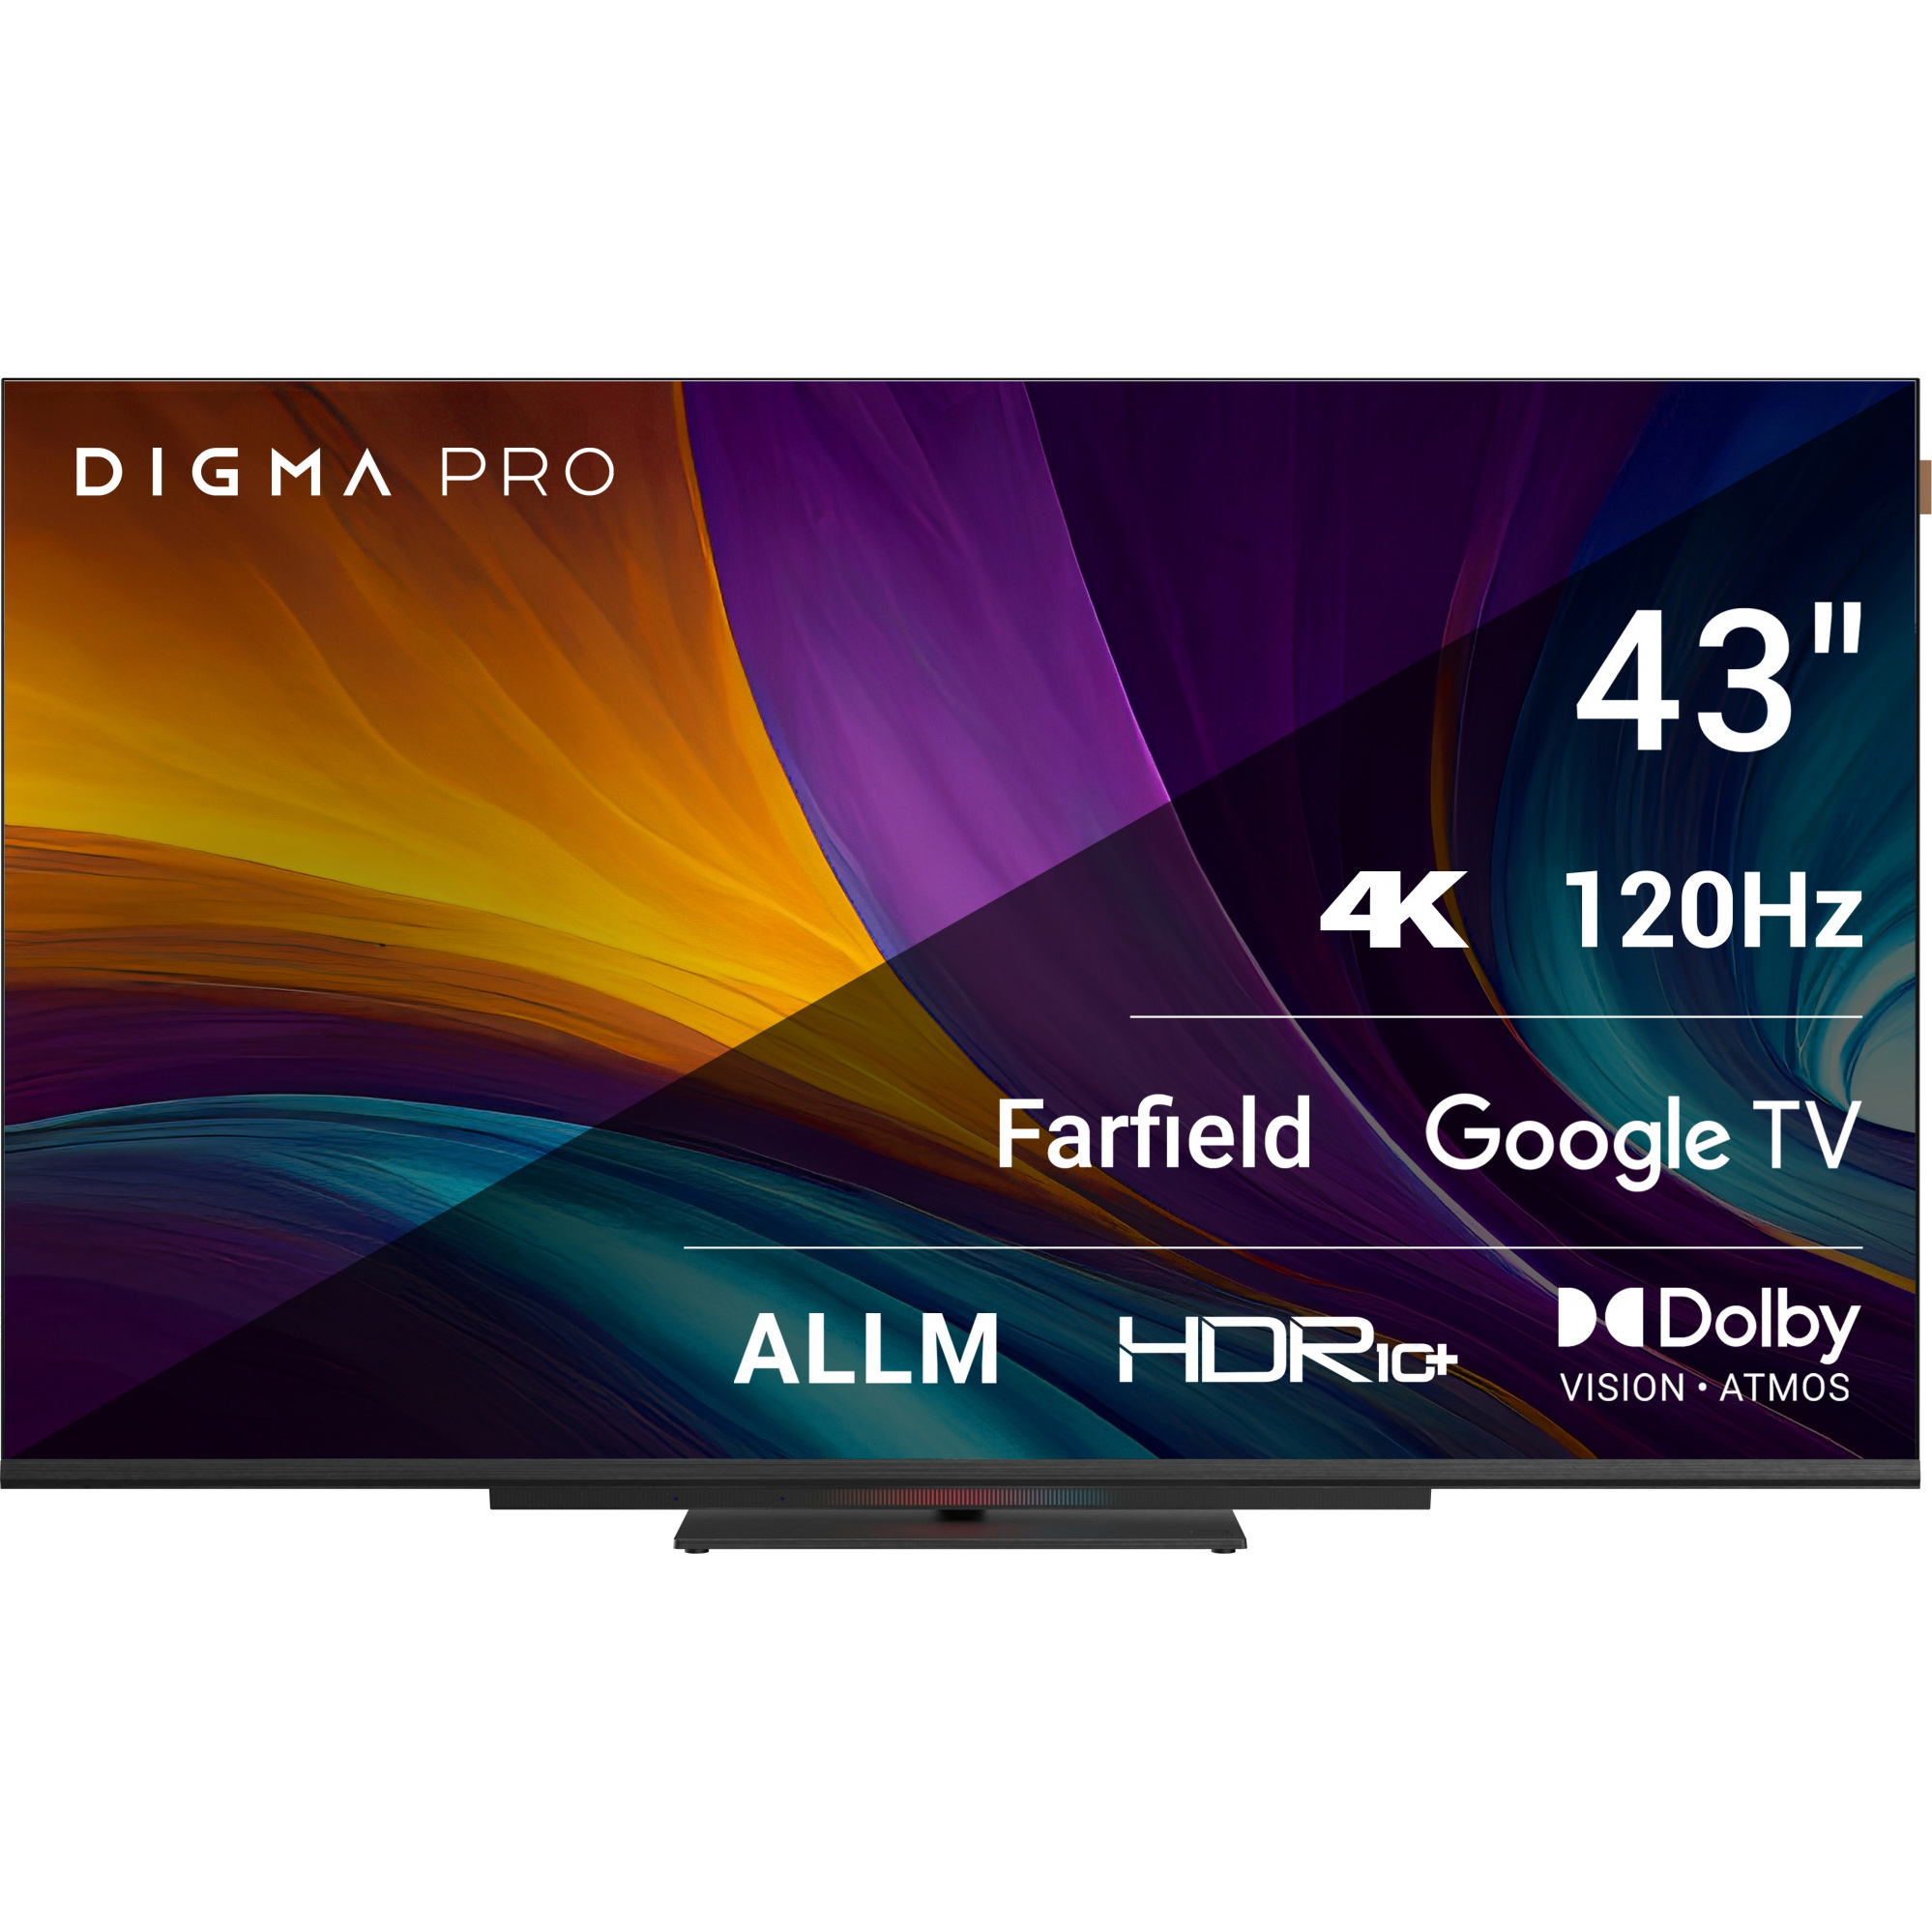 телевизор digma pro google tv uhd 55c 55 led 4k ultra hd google tv черный Телевизор Digma Pro 43 43C